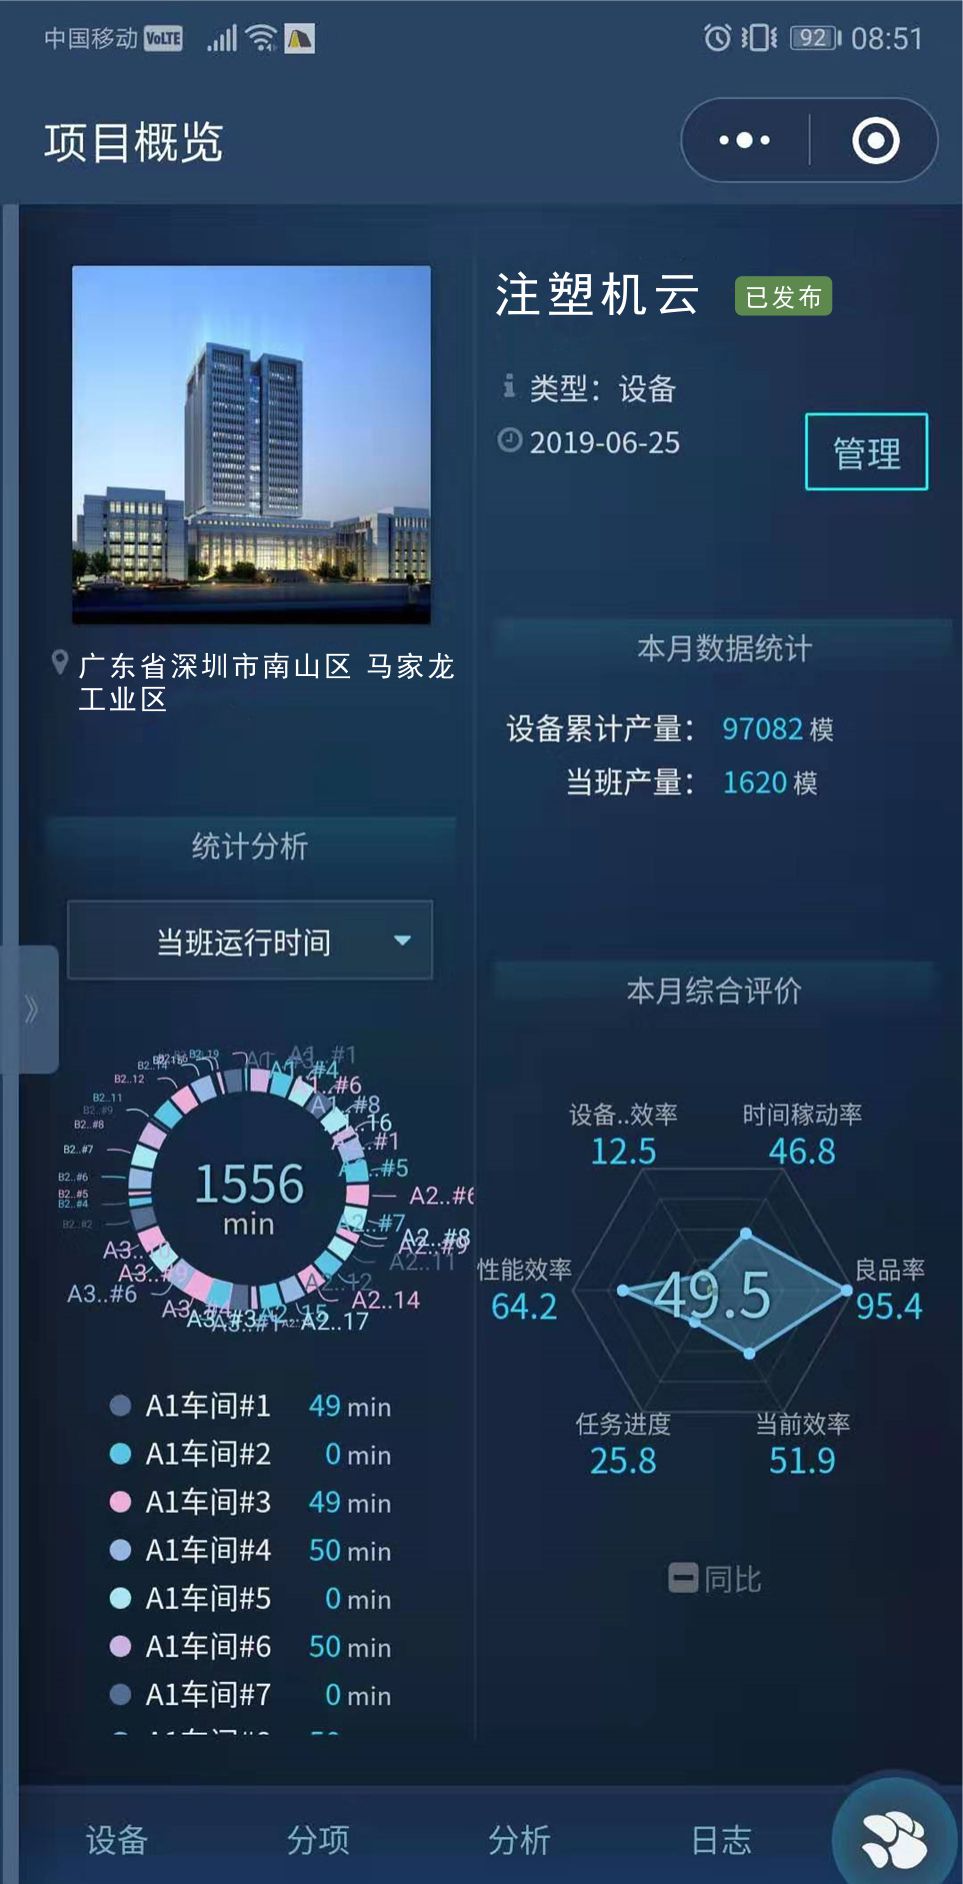 深圳老狗科技注塑机数据监控手机端APP